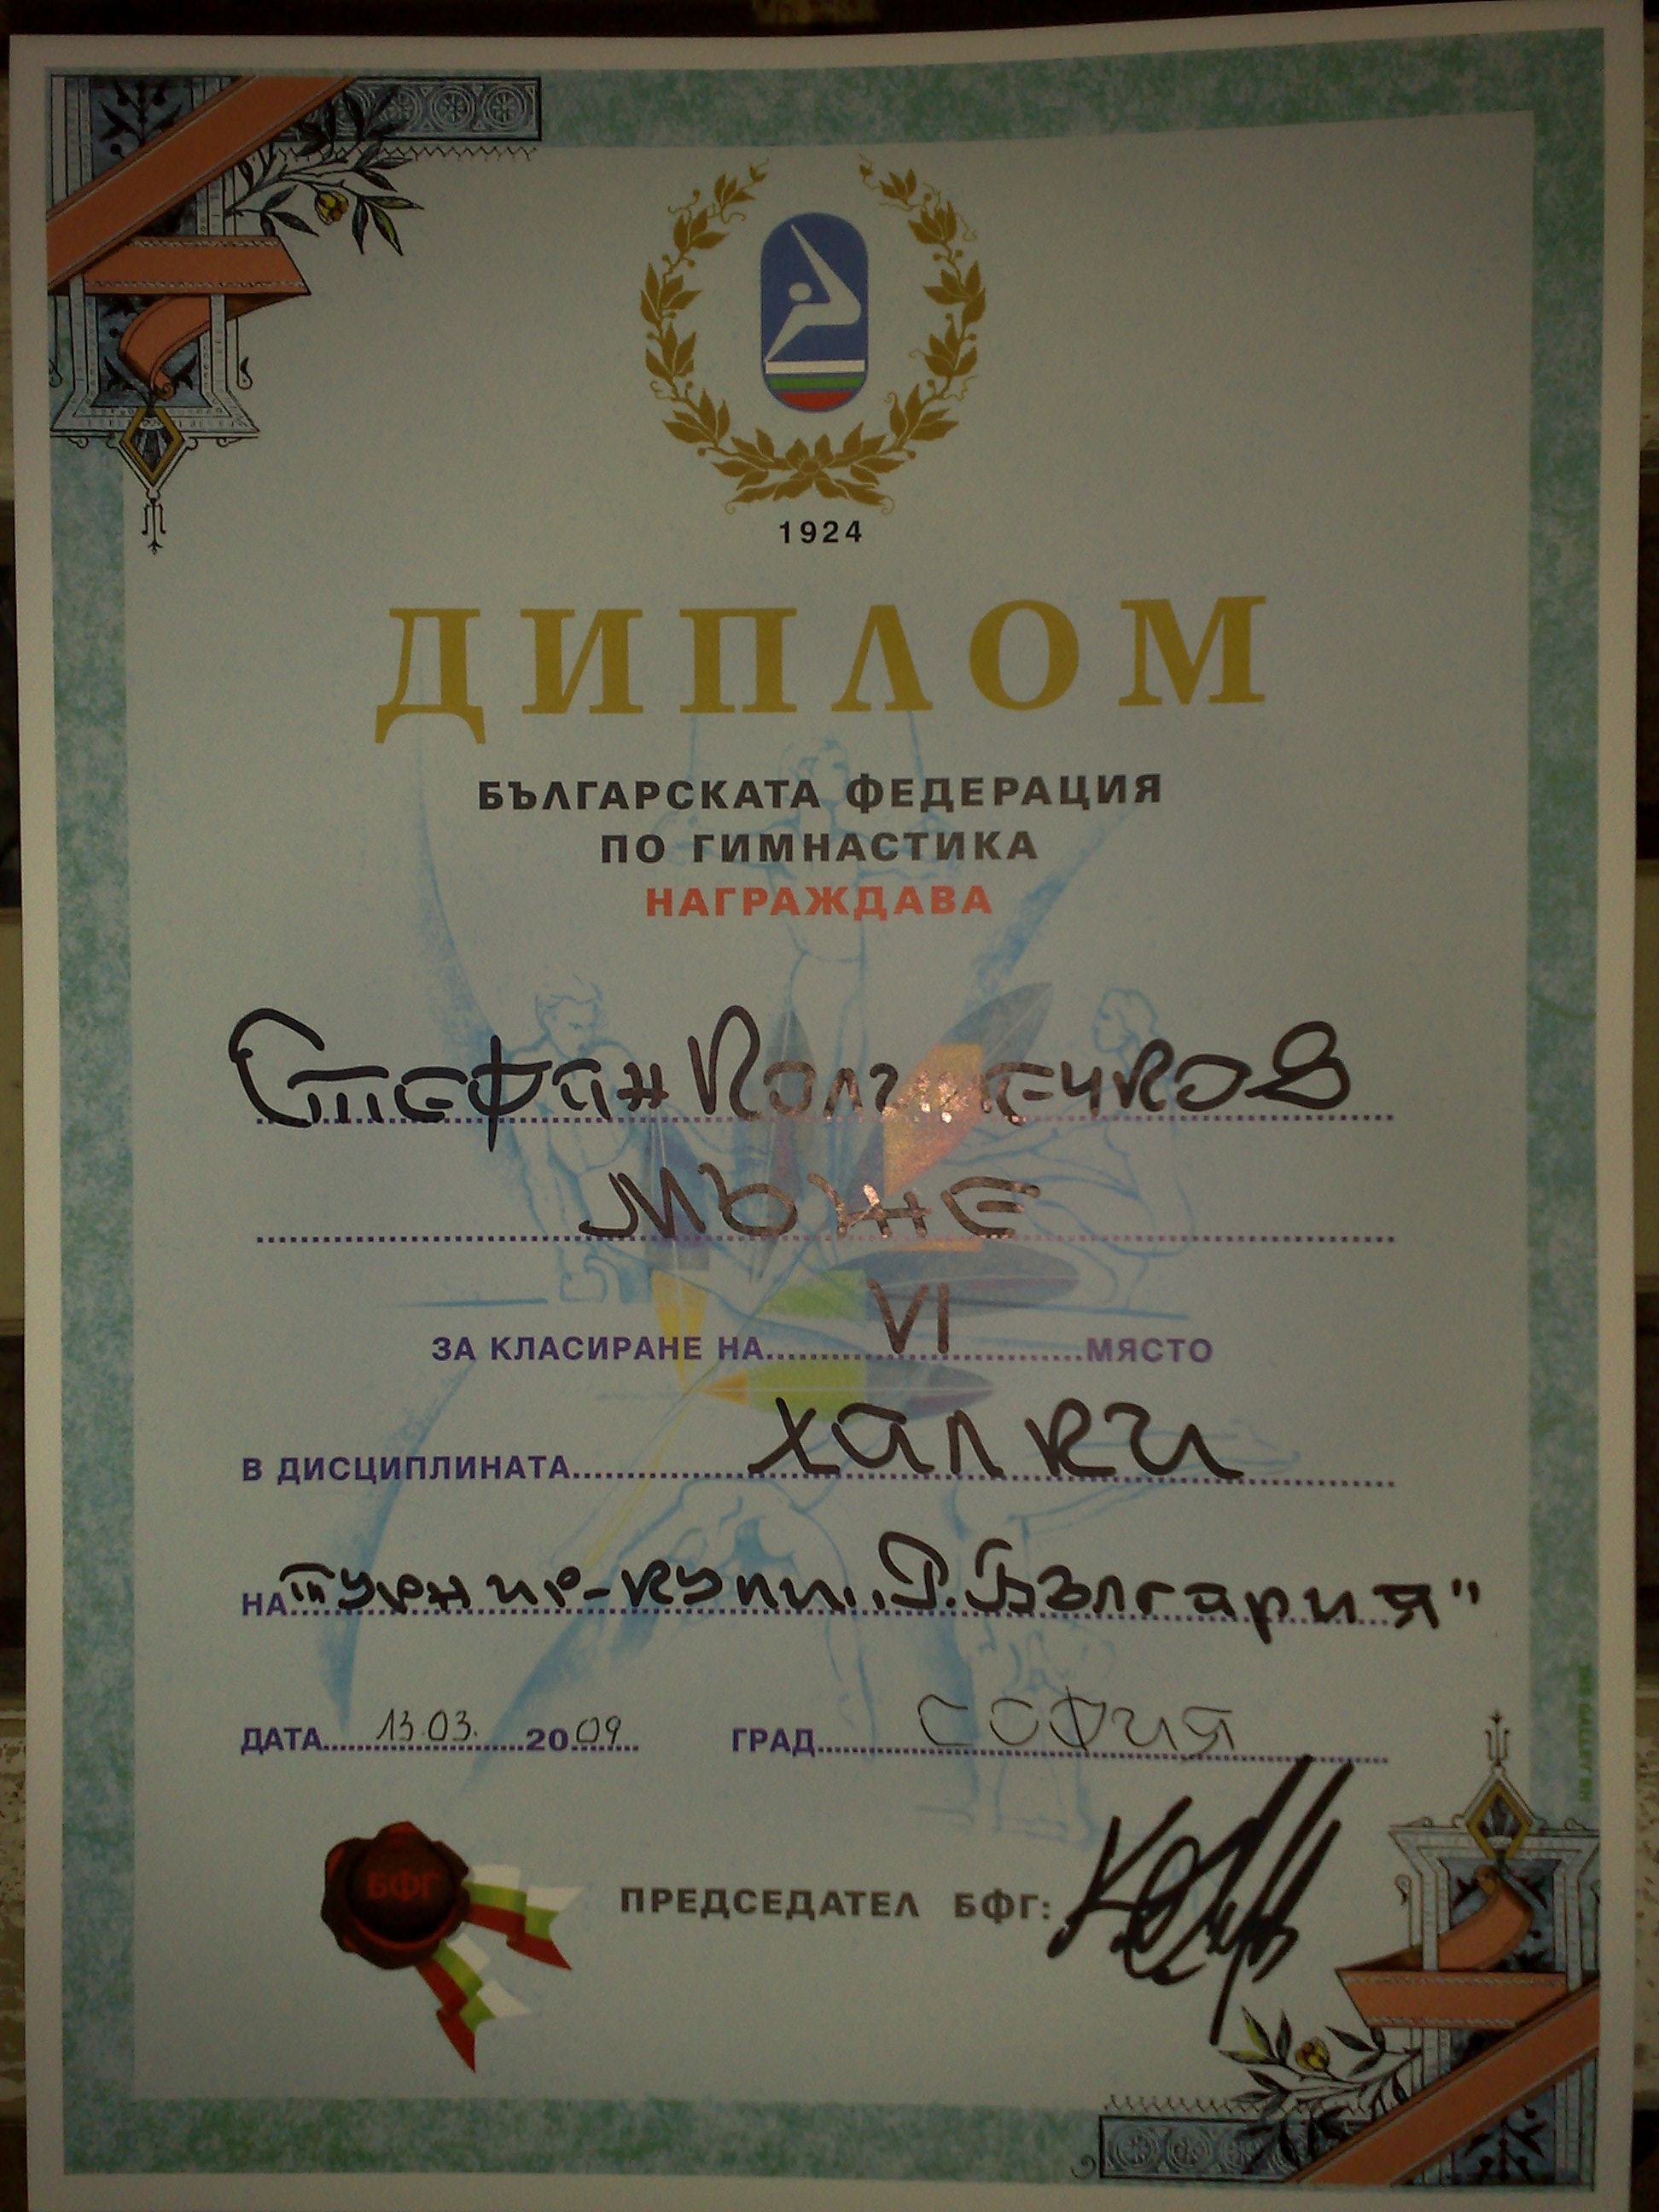 Stefan Kolimechkov - Certificate for 6th place in the Men's Rings Final, Bulgarian Cup 2009